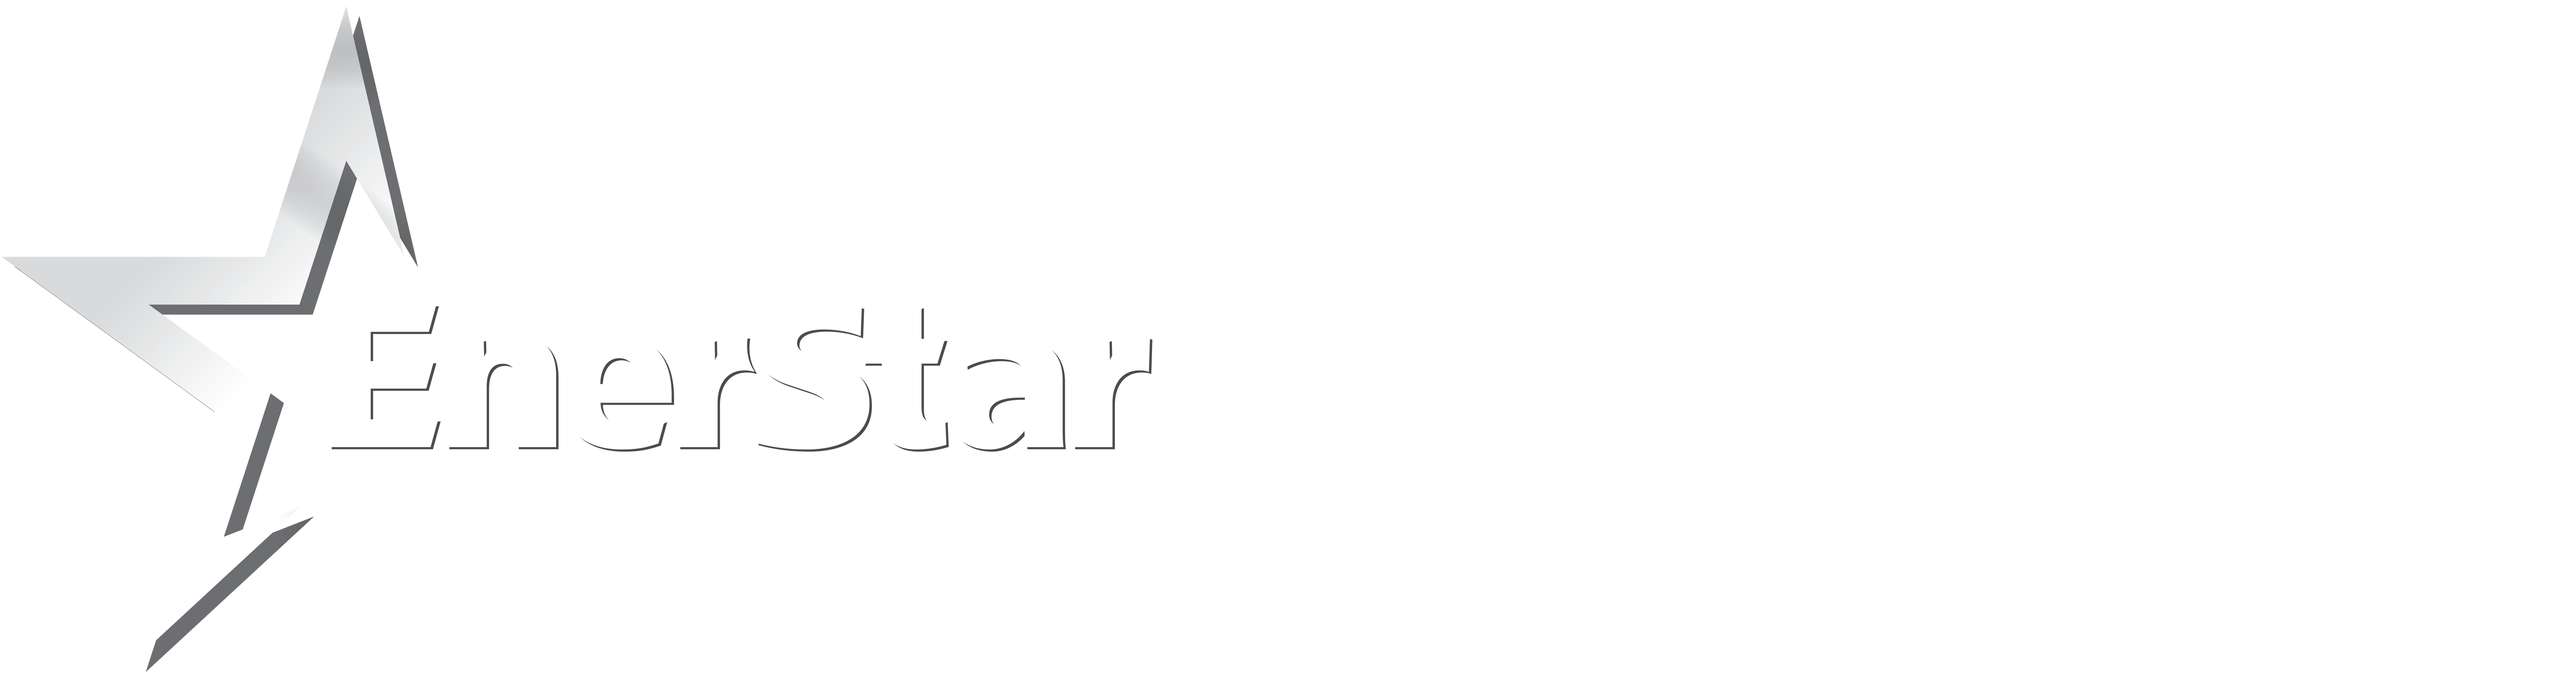 Starlink_Enerstar